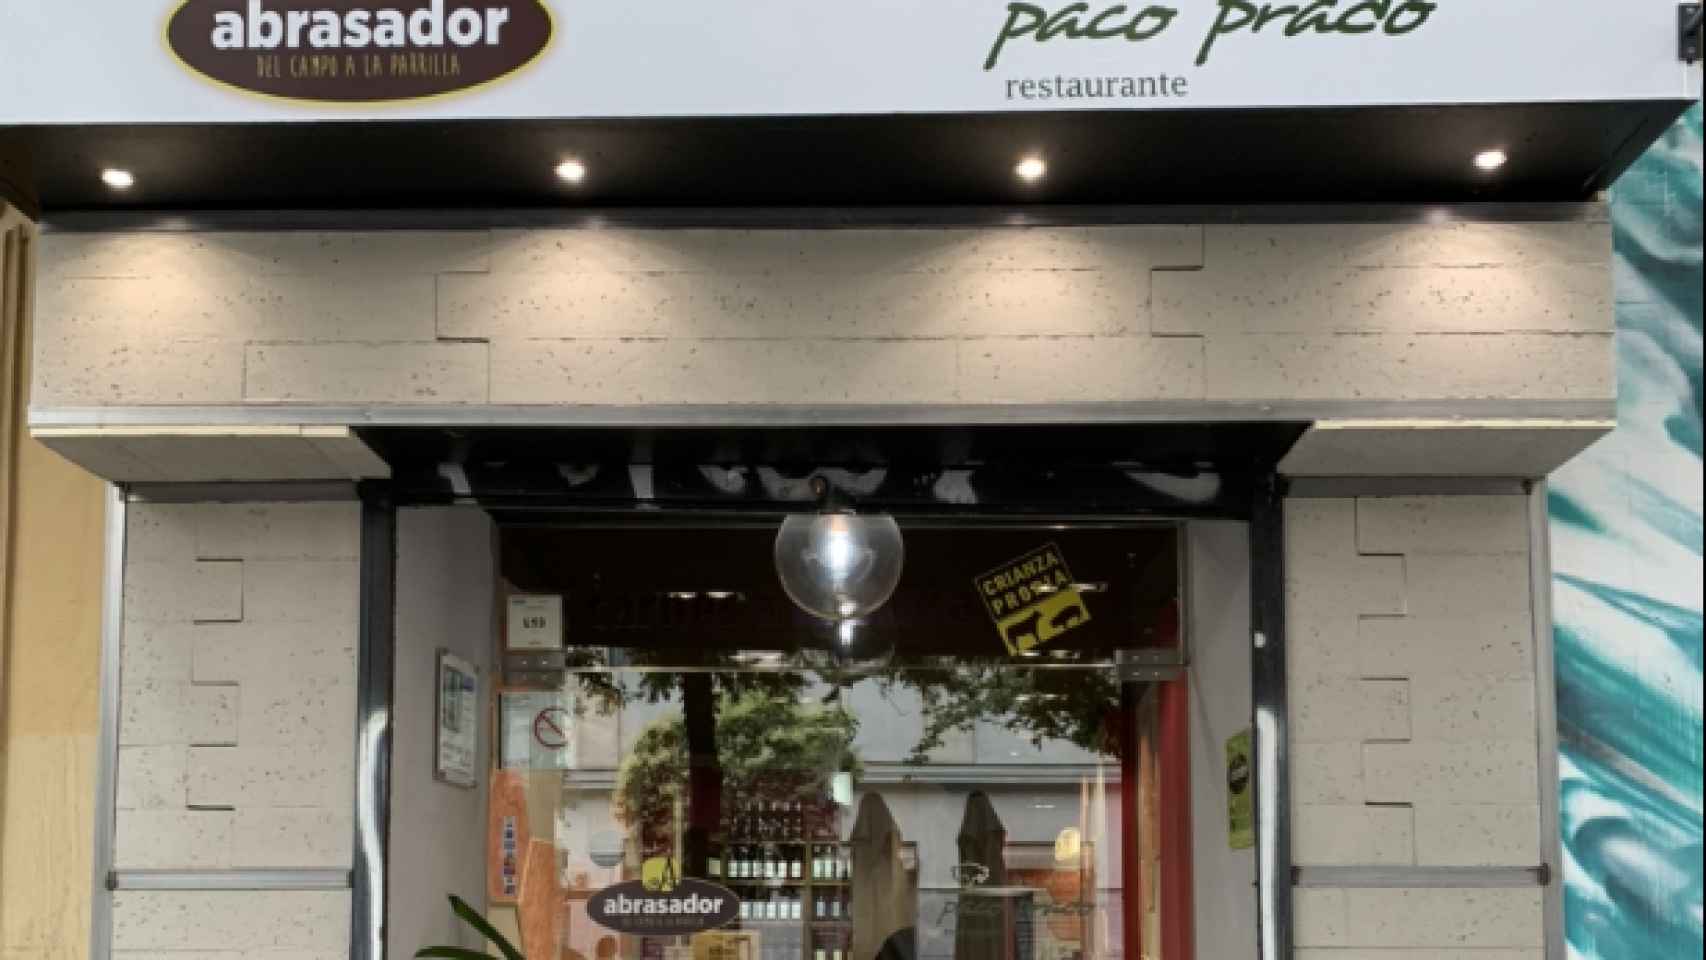 Abrasador Paco Prado, Madrid. Foto: Grupo Abrasador